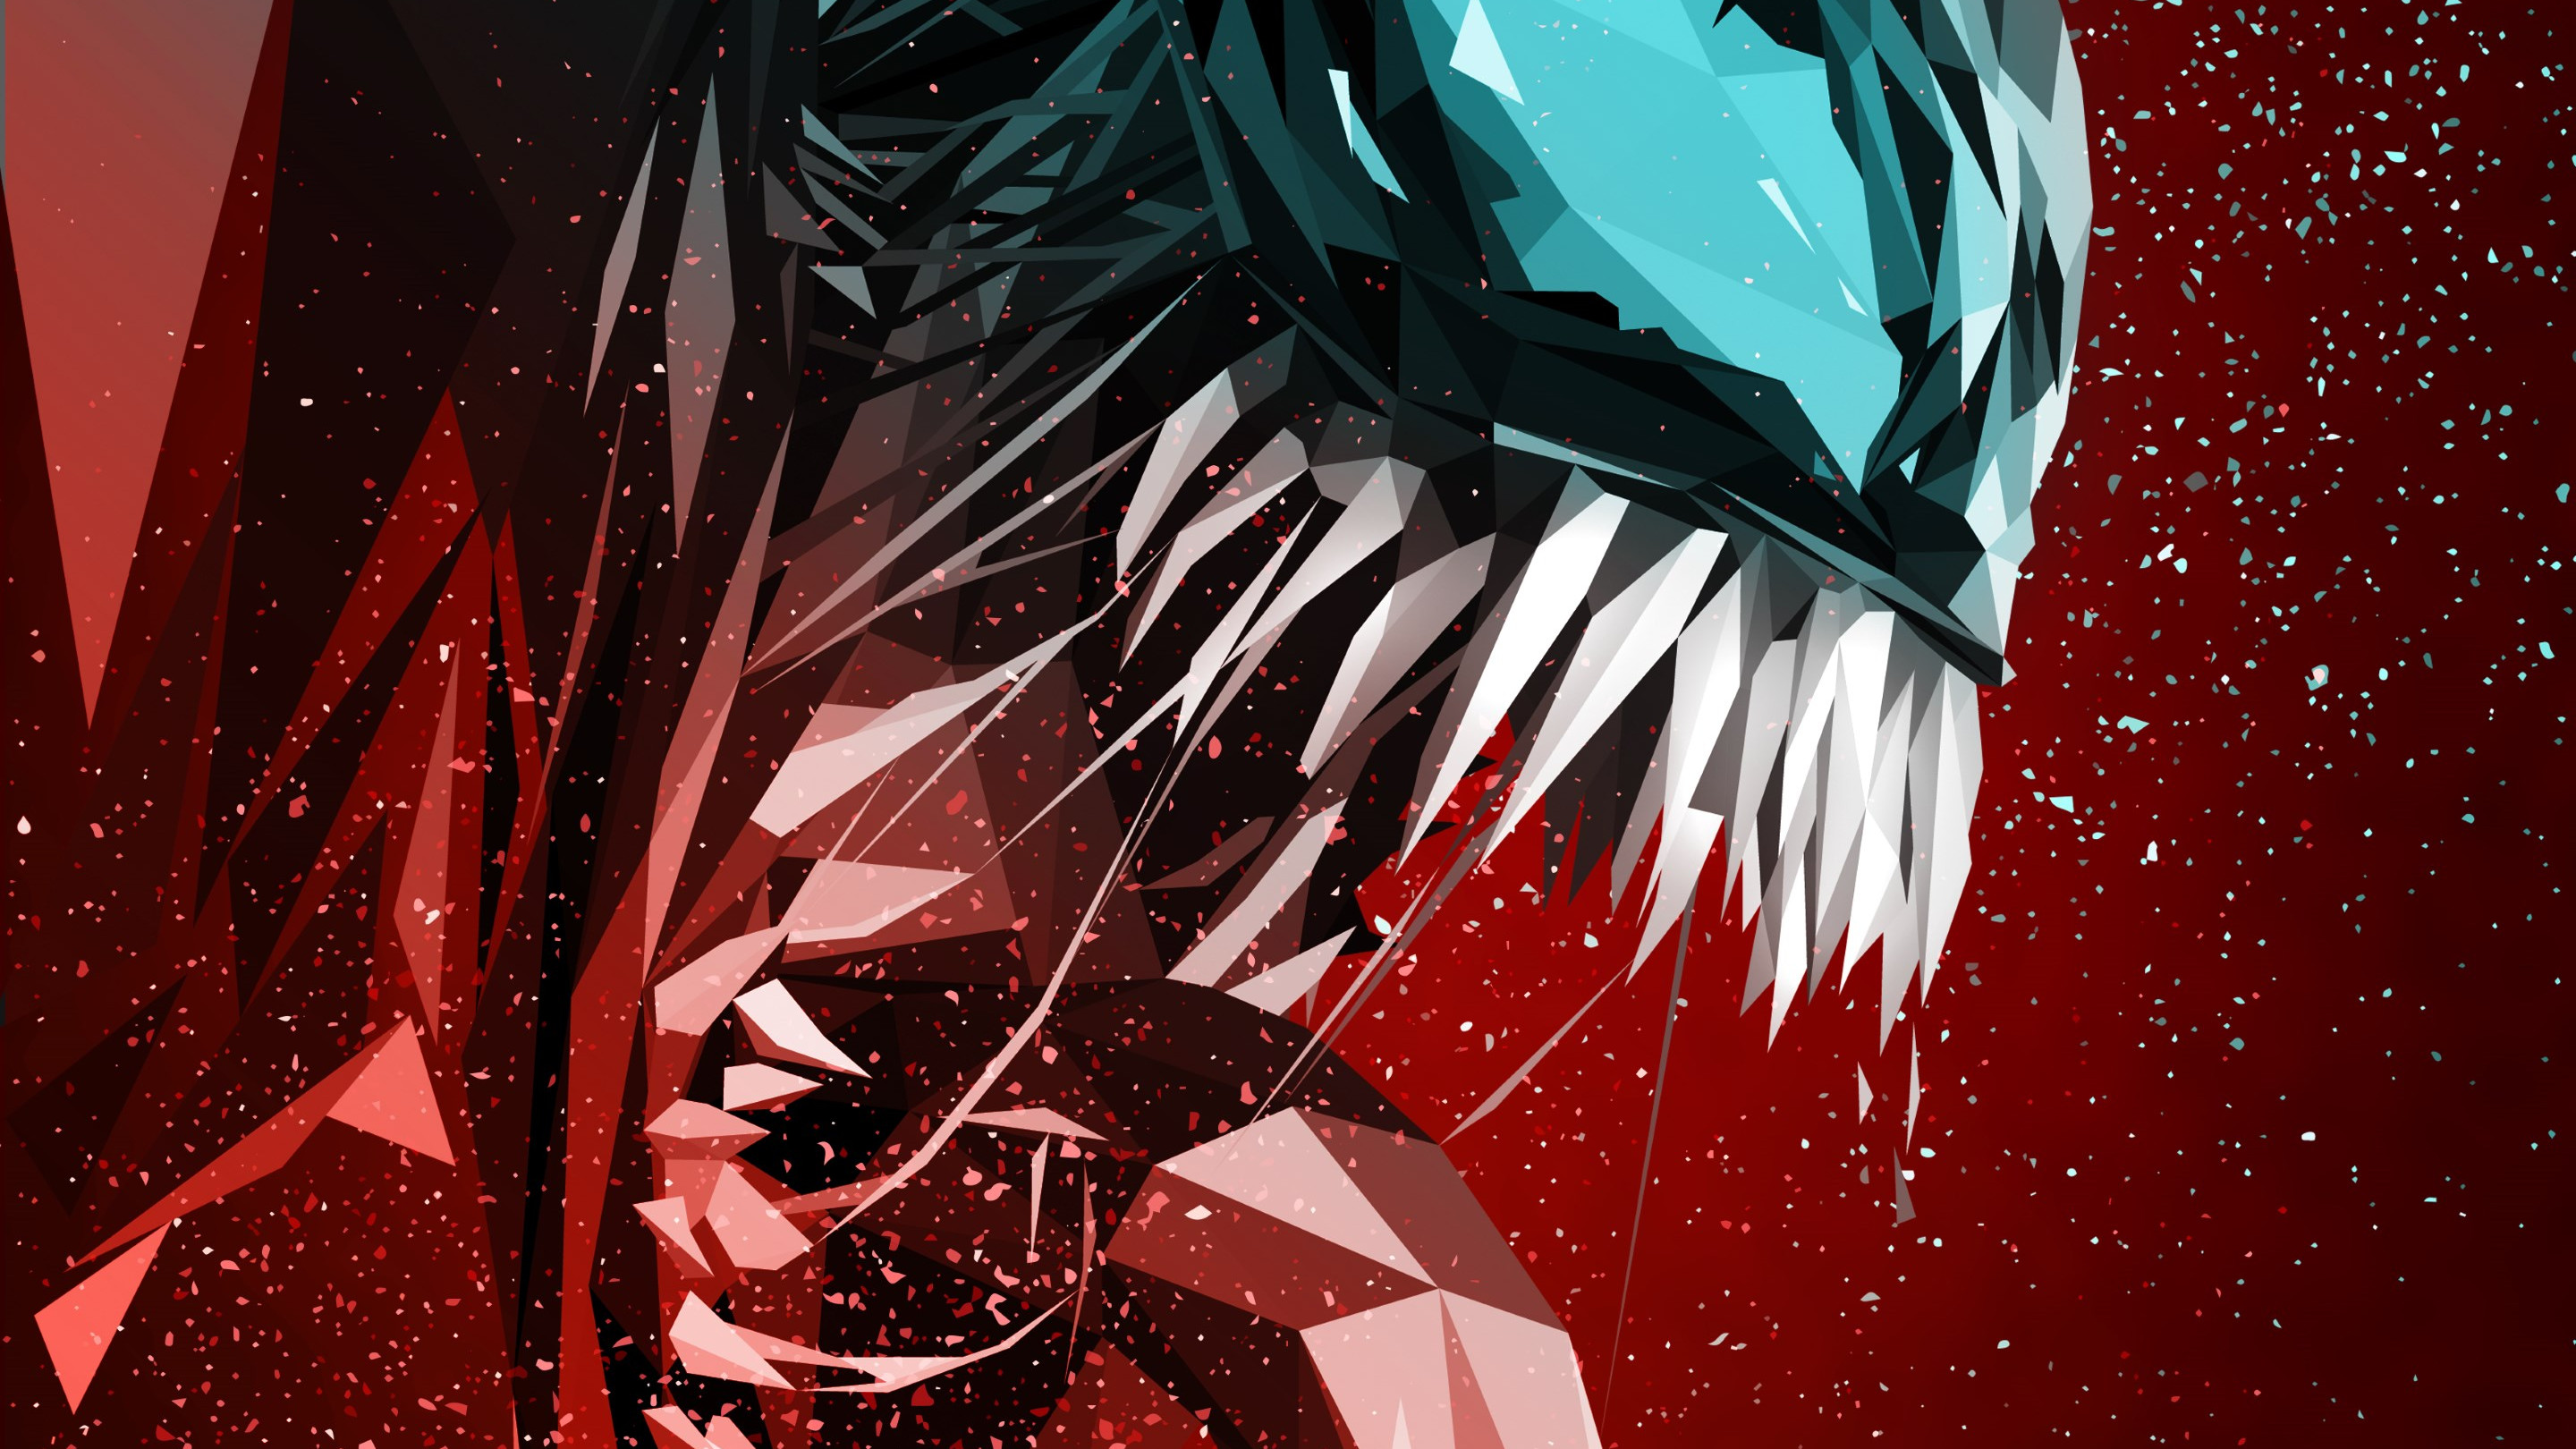 Venom digital art poster wallpaper 2880x1620